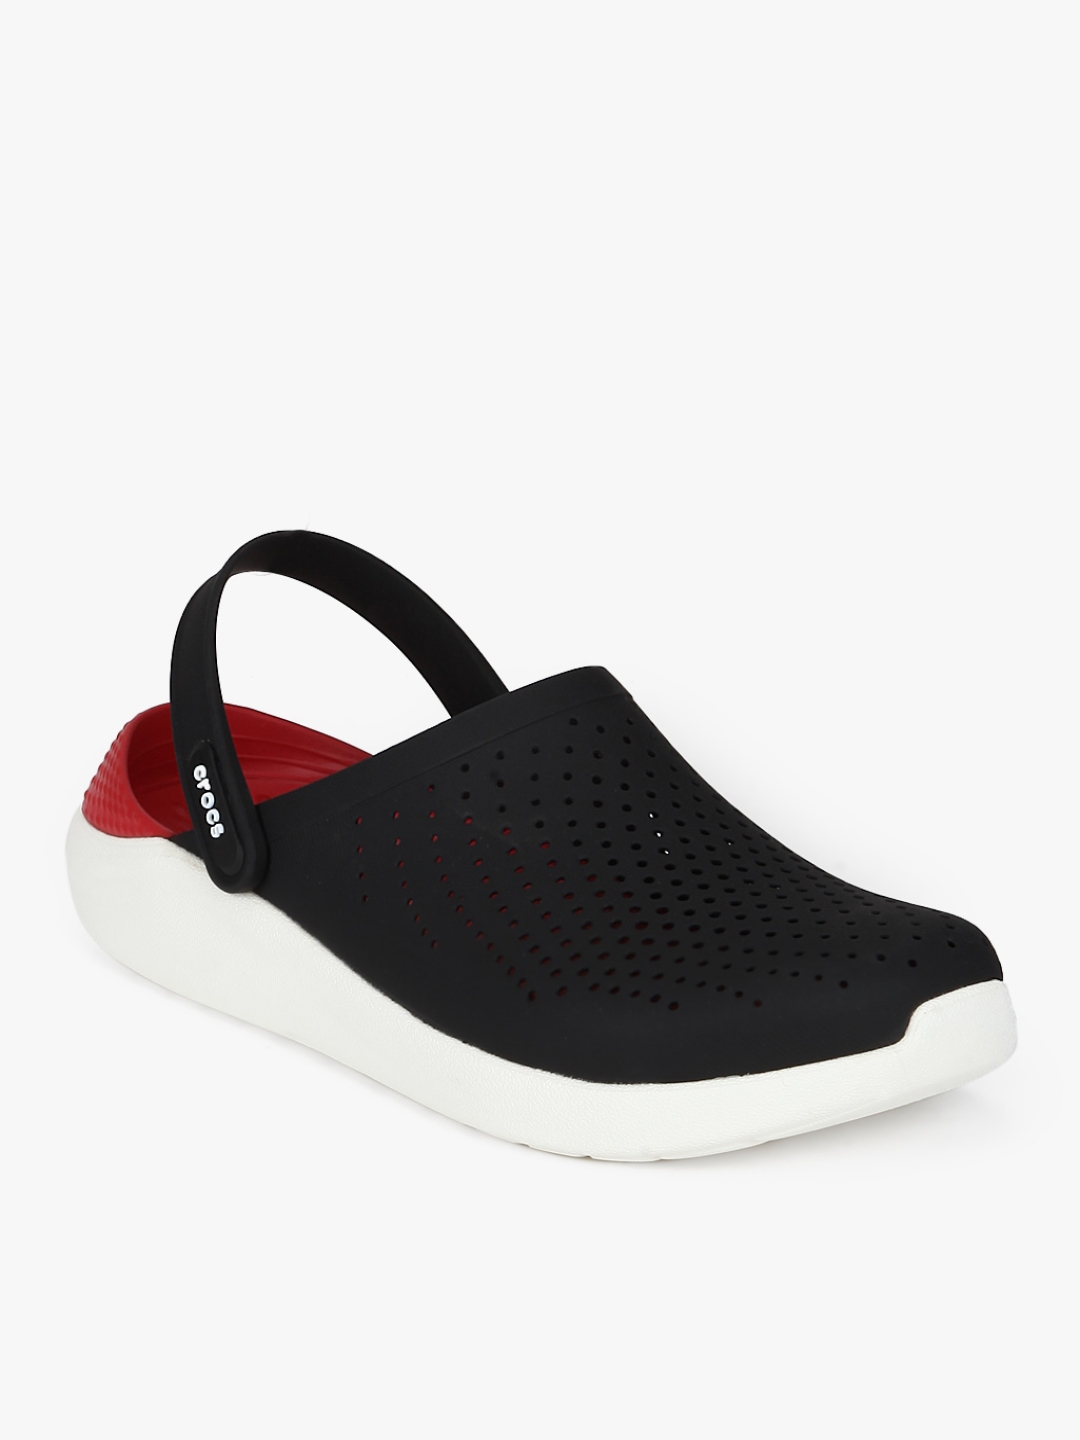 Buy Literide Black Clog Sandals - Sandals for Unisex 7896421 | Myntra